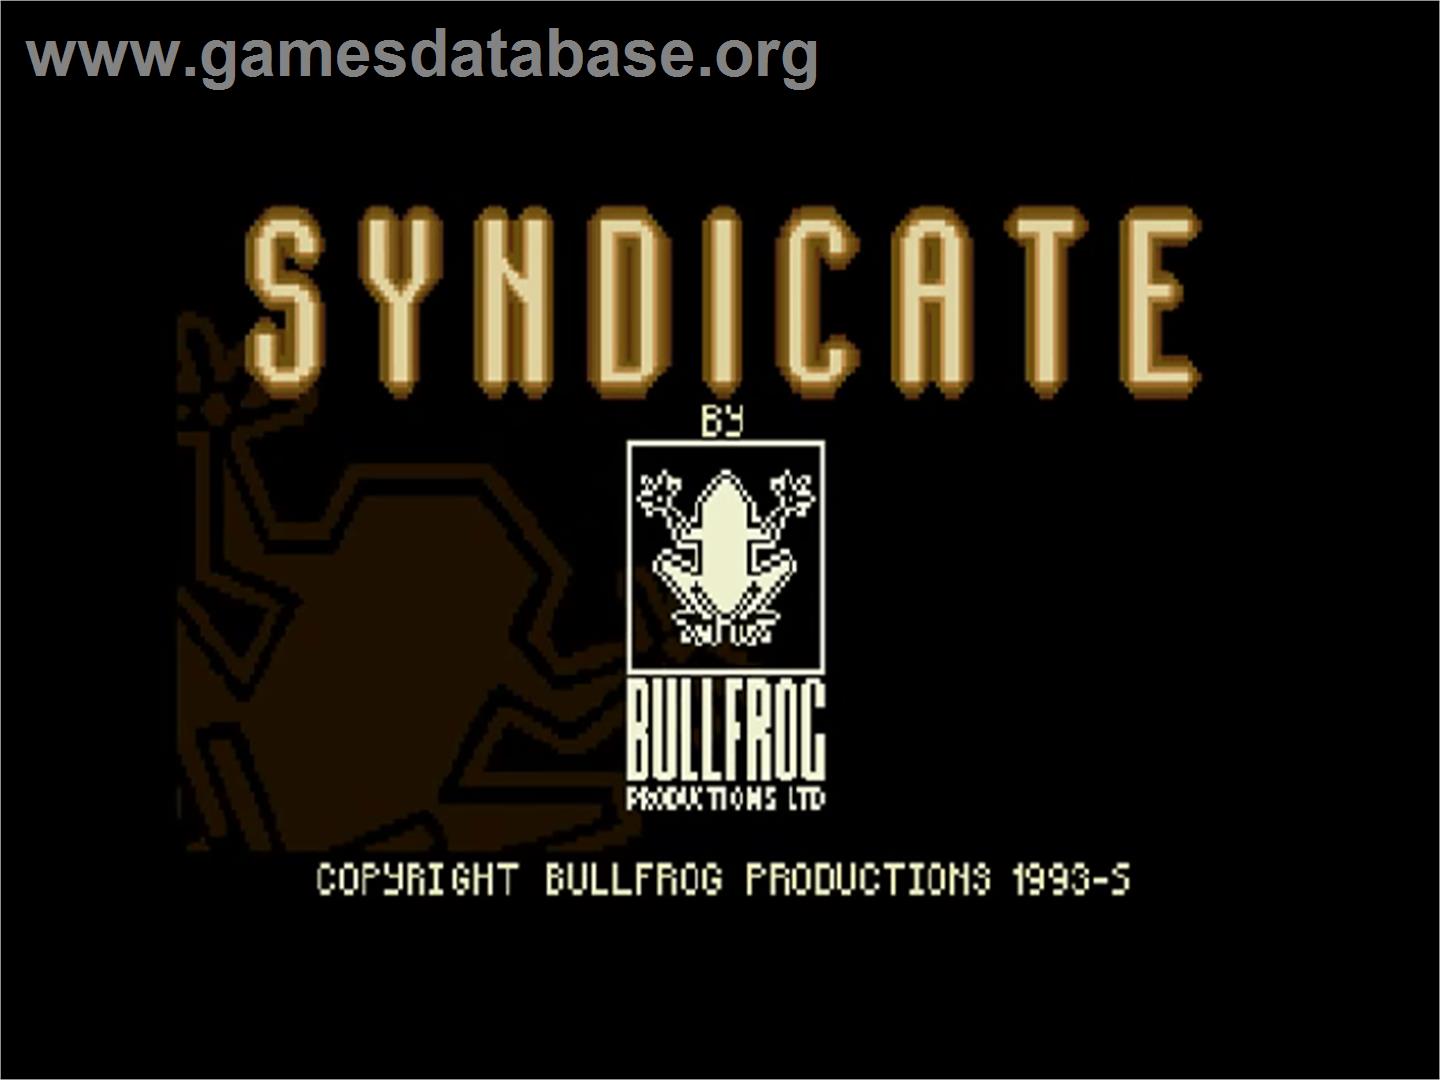 Syndicate - Commodore Amiga CD32 - Artwork - Title Screen